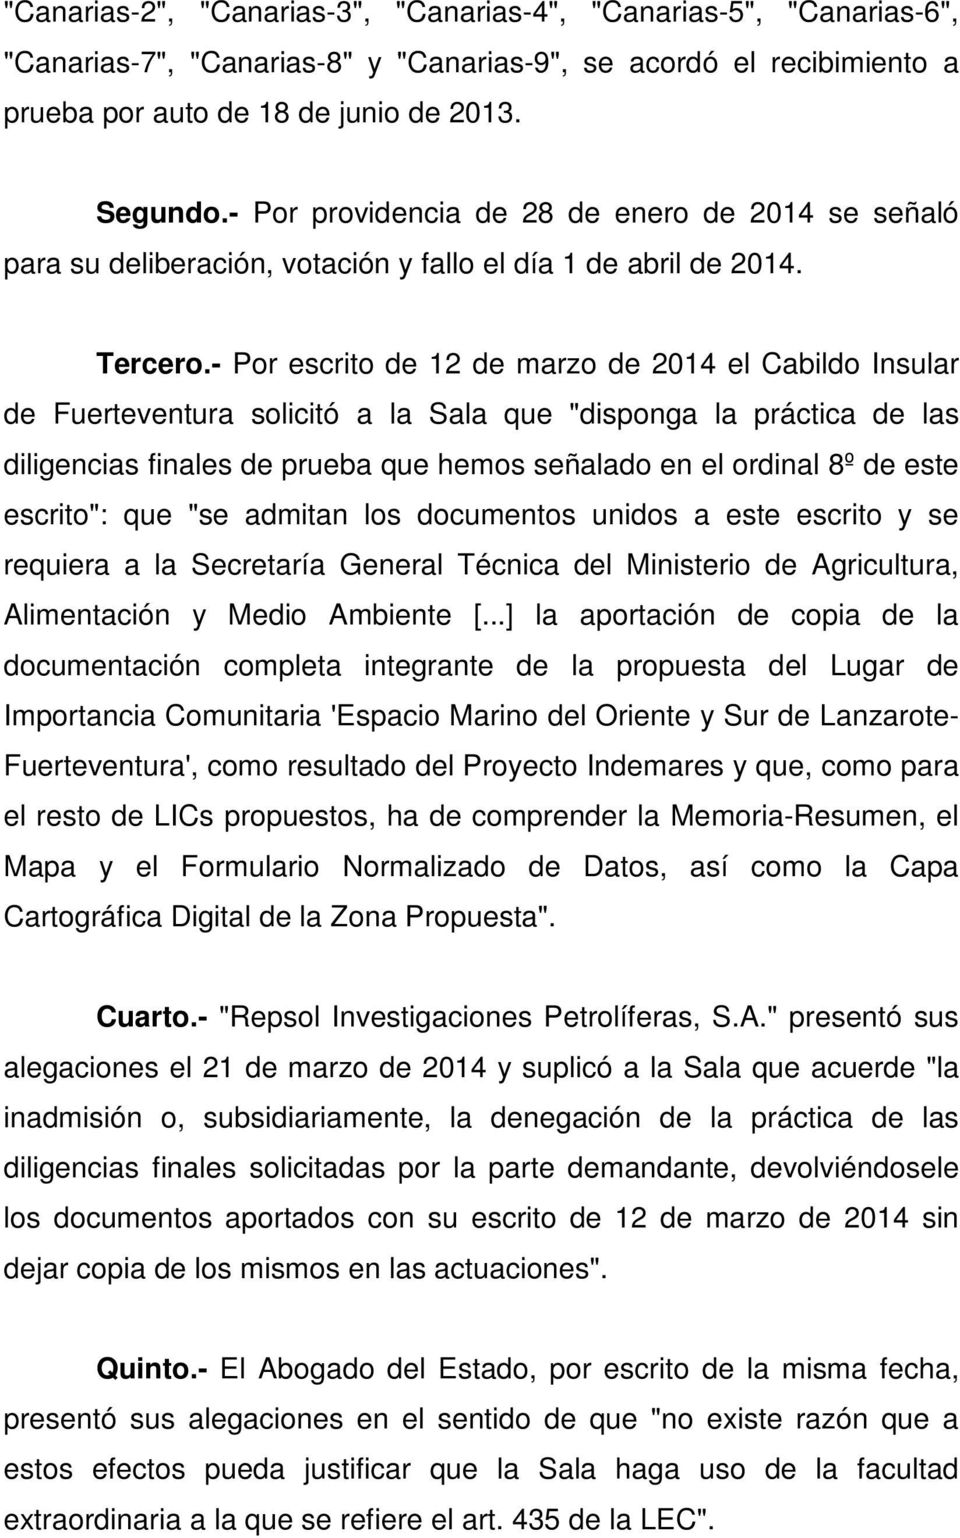 - Por escrito de 12 de marzo de 2014 el Cabildo Insular de Fuerteventura solicitó a la Sala que "disponga la práctica de las diligencias finales de prueba que hemos señalado en el ordinal 8º de este